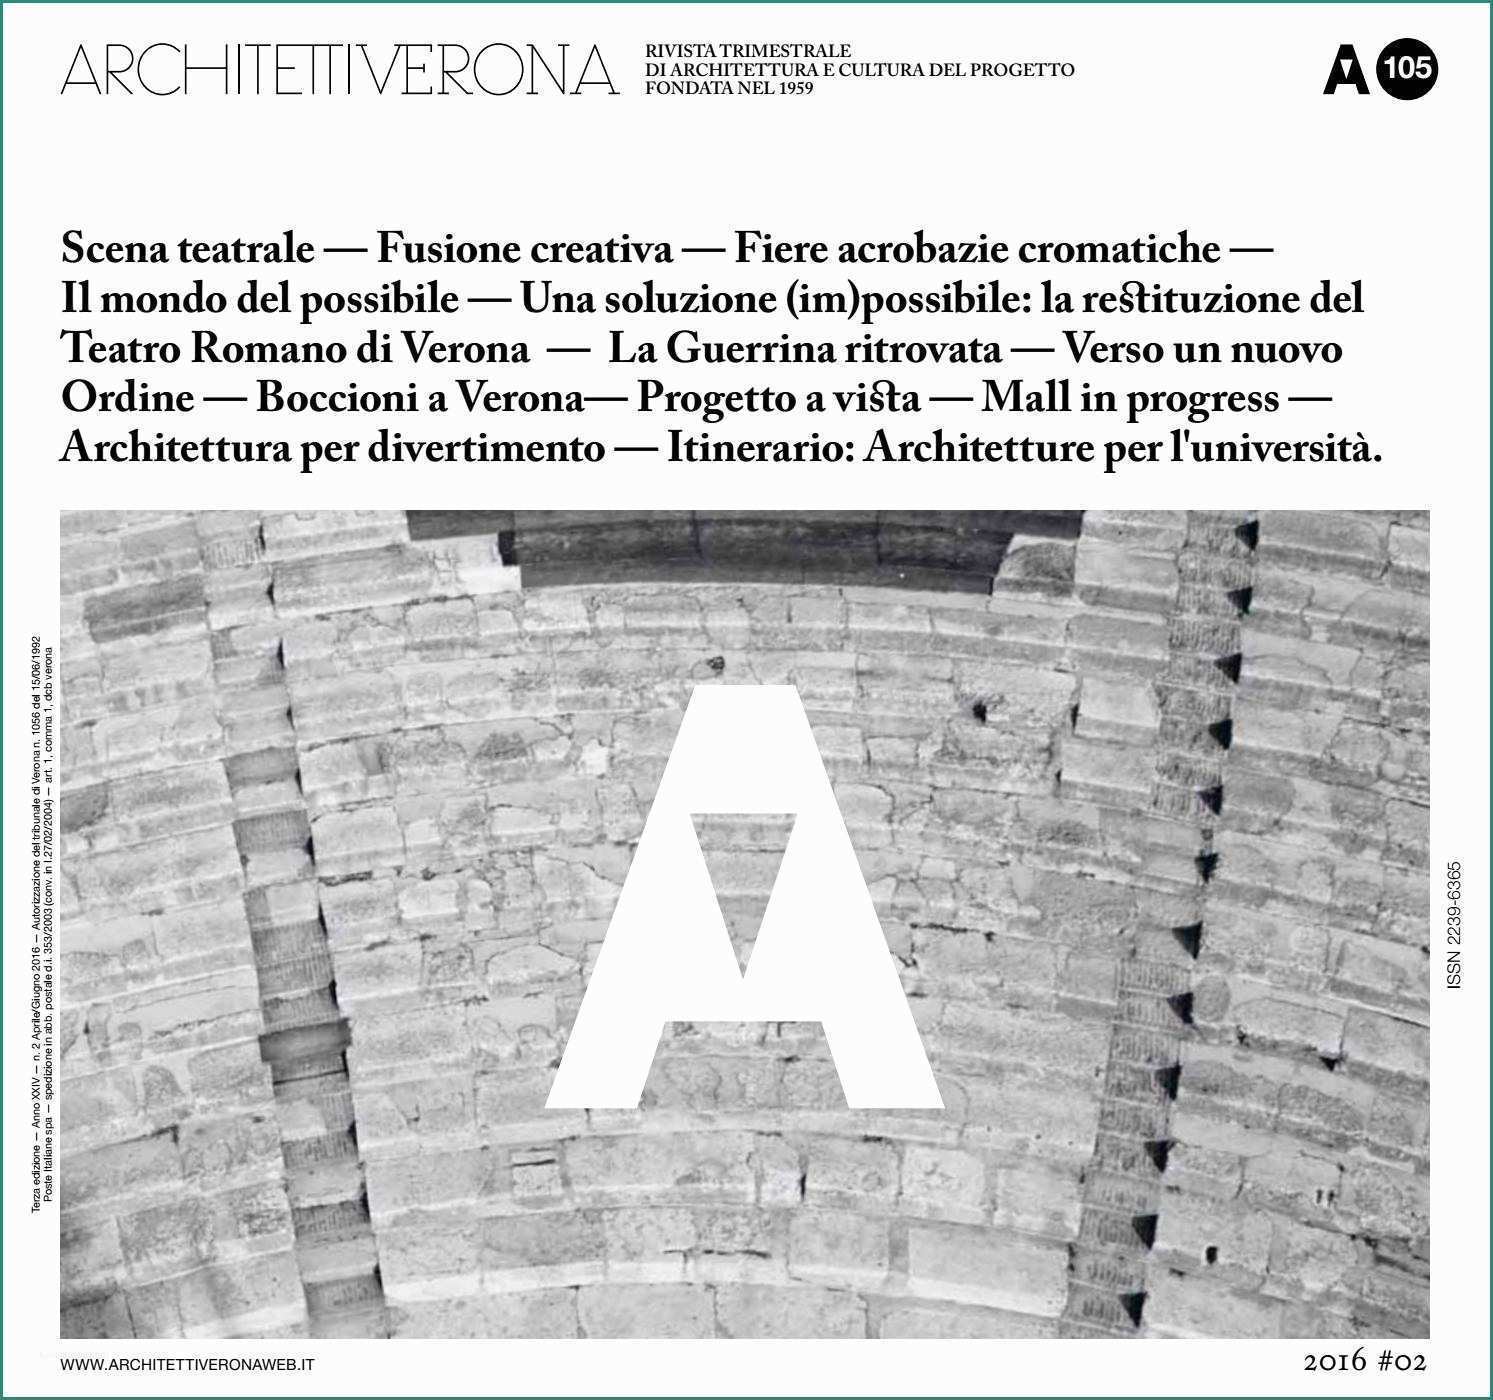 Simbolo Quadro Elettrico Dwg E Architettiverona 105 by Architettiverona issuu